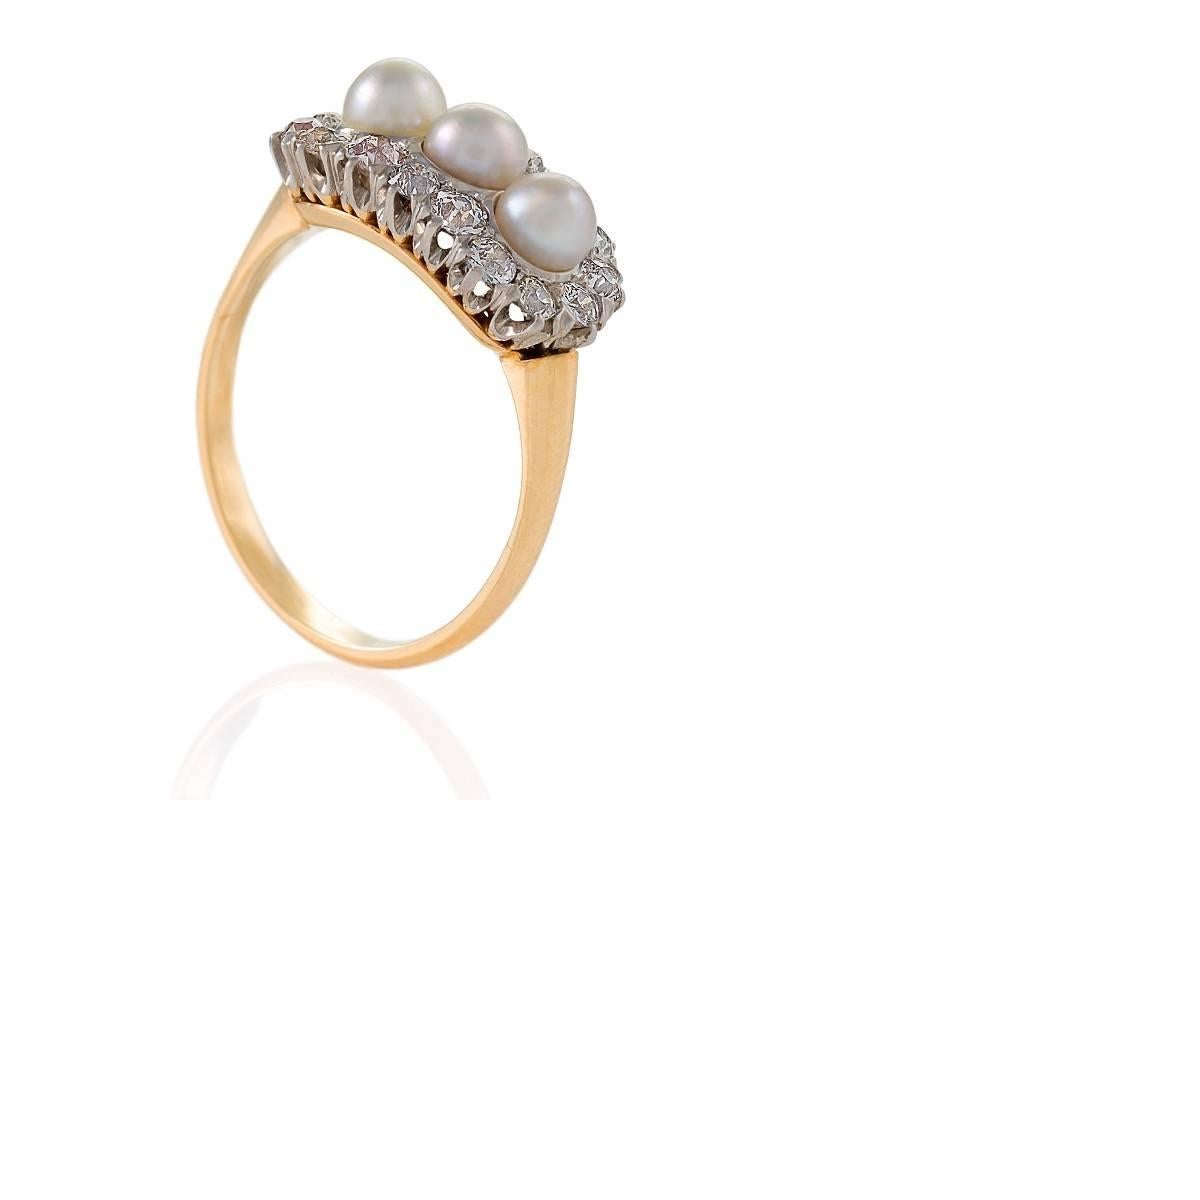 Dieser romantische Ring ist perfekt edwardianisch mit seinen drei cremefarbenen, schimmernden Perlen, die in Platin gefasst sind, inmitten eines Nestes von brillant funkelnden Diamanten. Das Gleichgewicht zwischen den milchigen Perlen und den